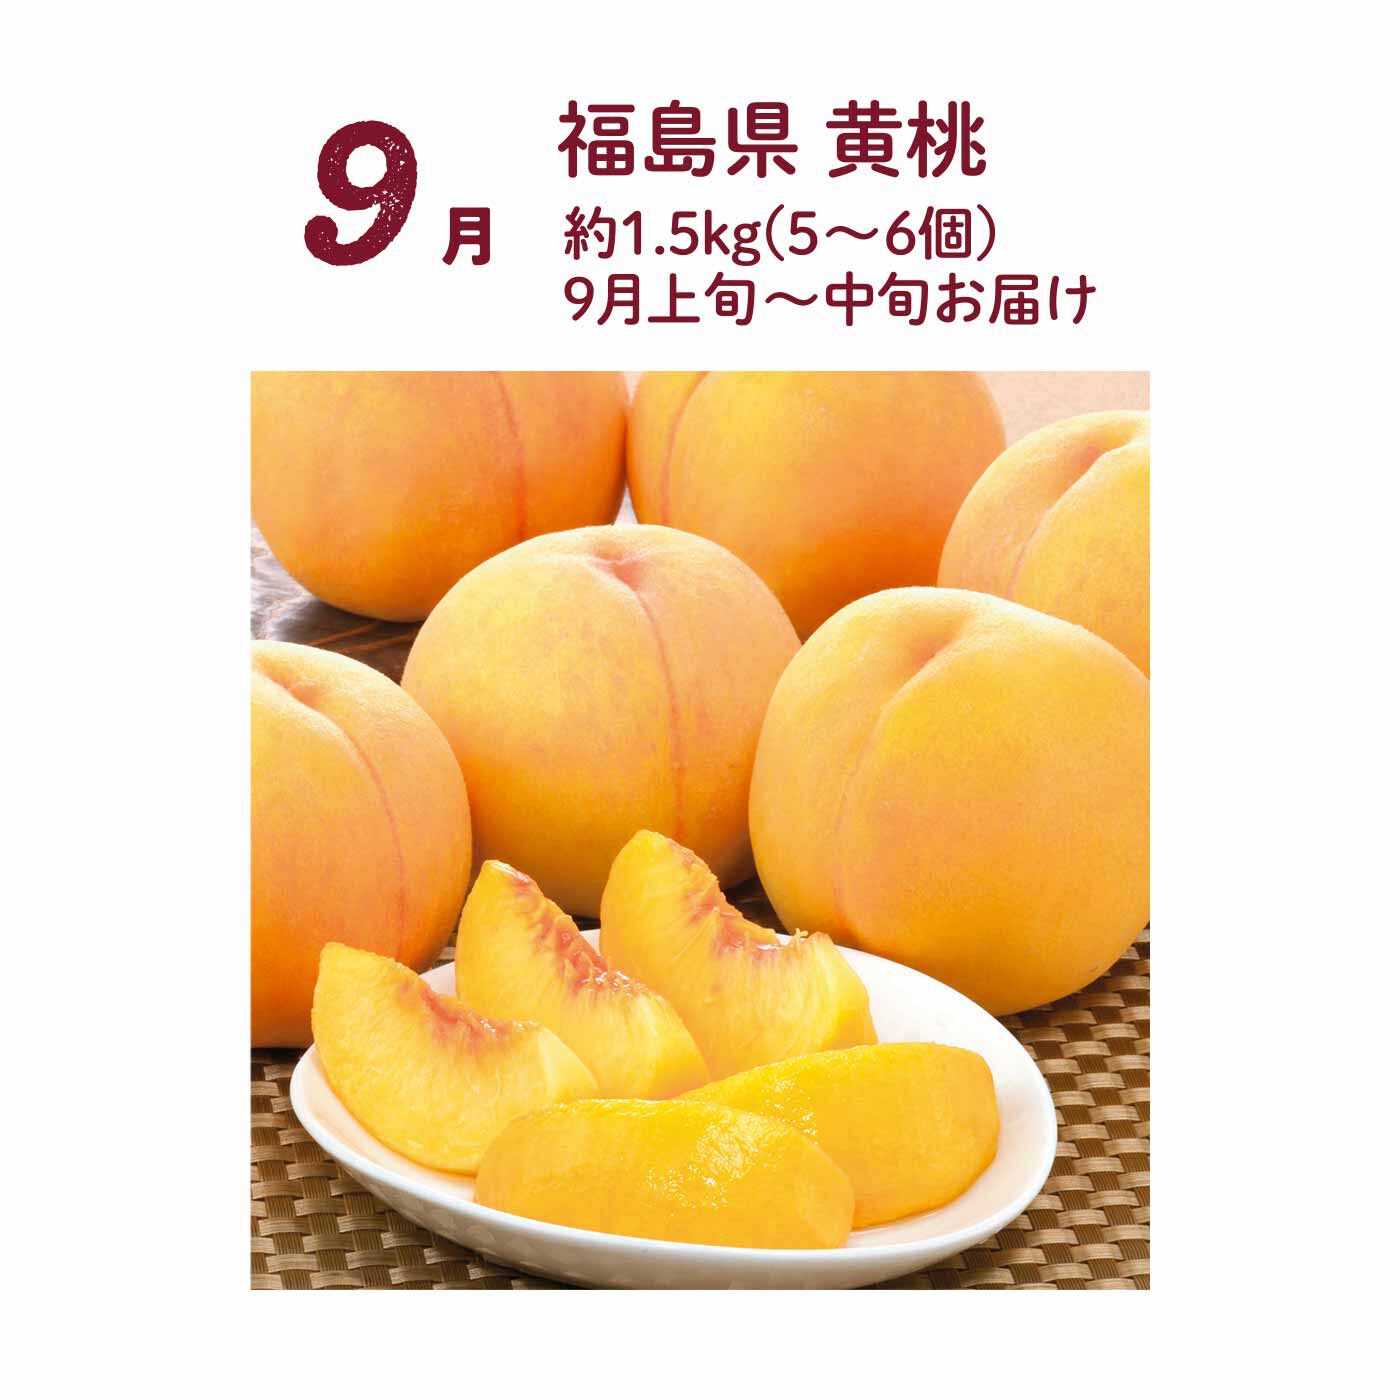 FP産地直送マルシェ|【締切 7/7】日本三大ピーチ王国の桃をぜいたくに食べ比べ3ヵ月コース